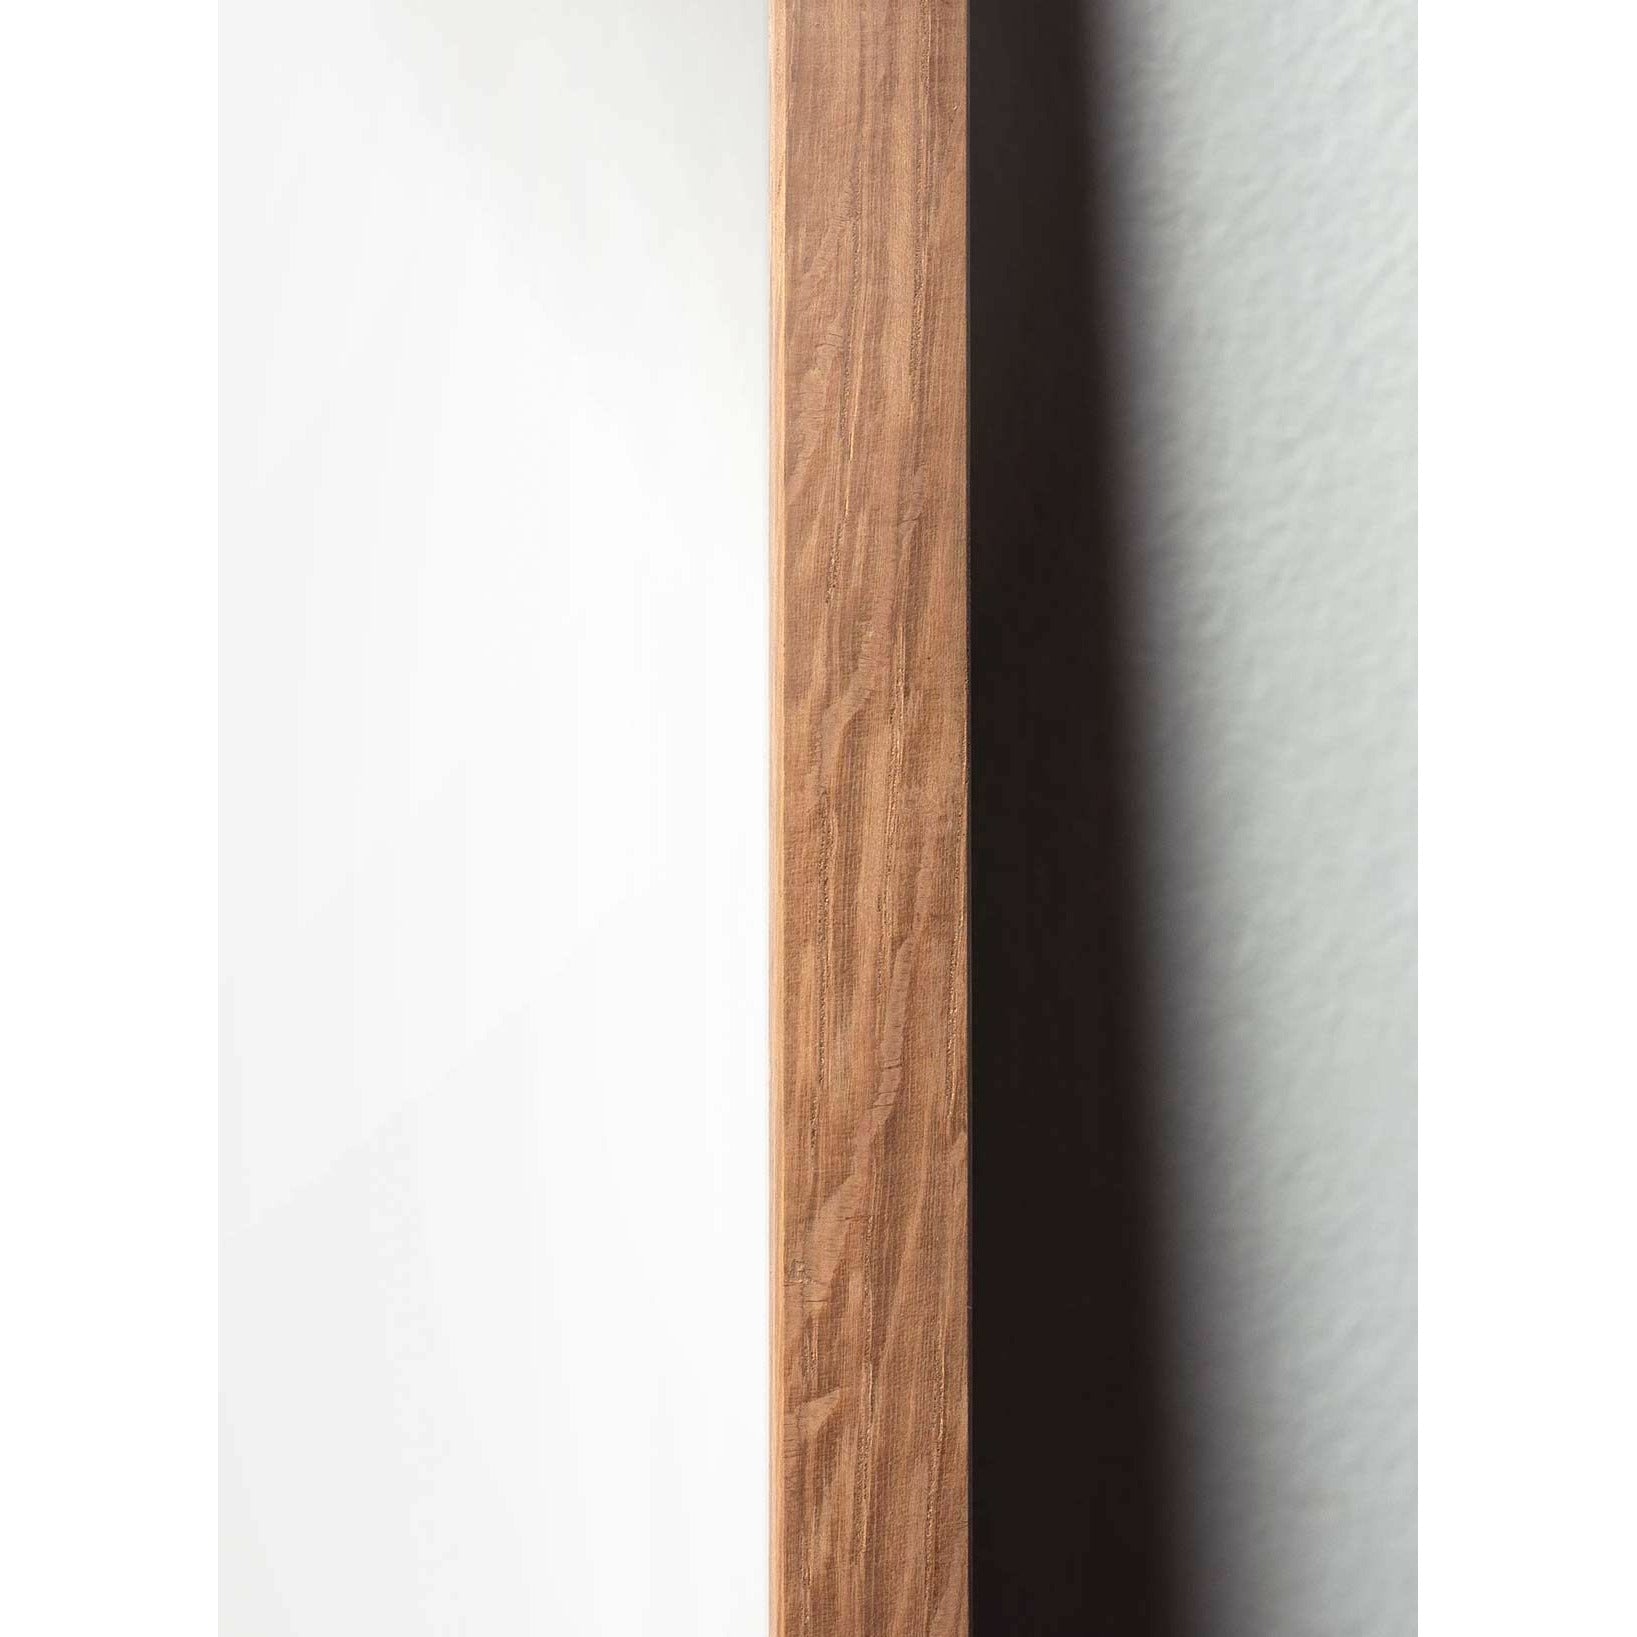 Brainchild Affiche de ligne de cygne, cadre en bois clair 30x40 cm, fond blanc